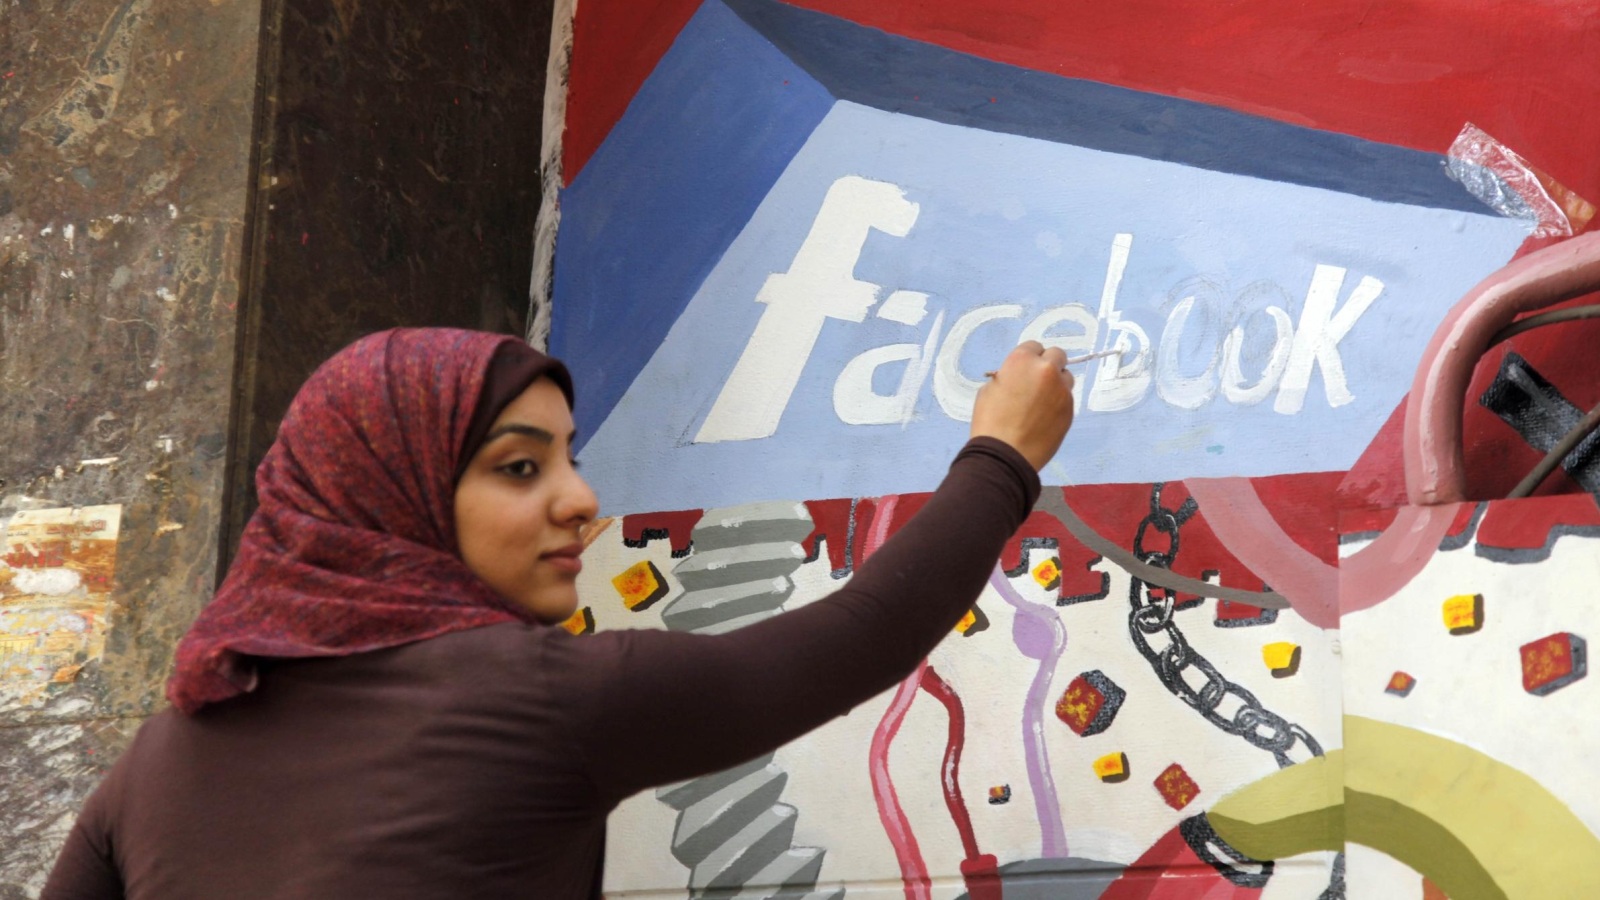 لعب فيسبوك دورا كبيرا في الاحتجاجات التي أطاحت بالرئيس المصري السابق حسني مبارك (أسوشيتد برس)